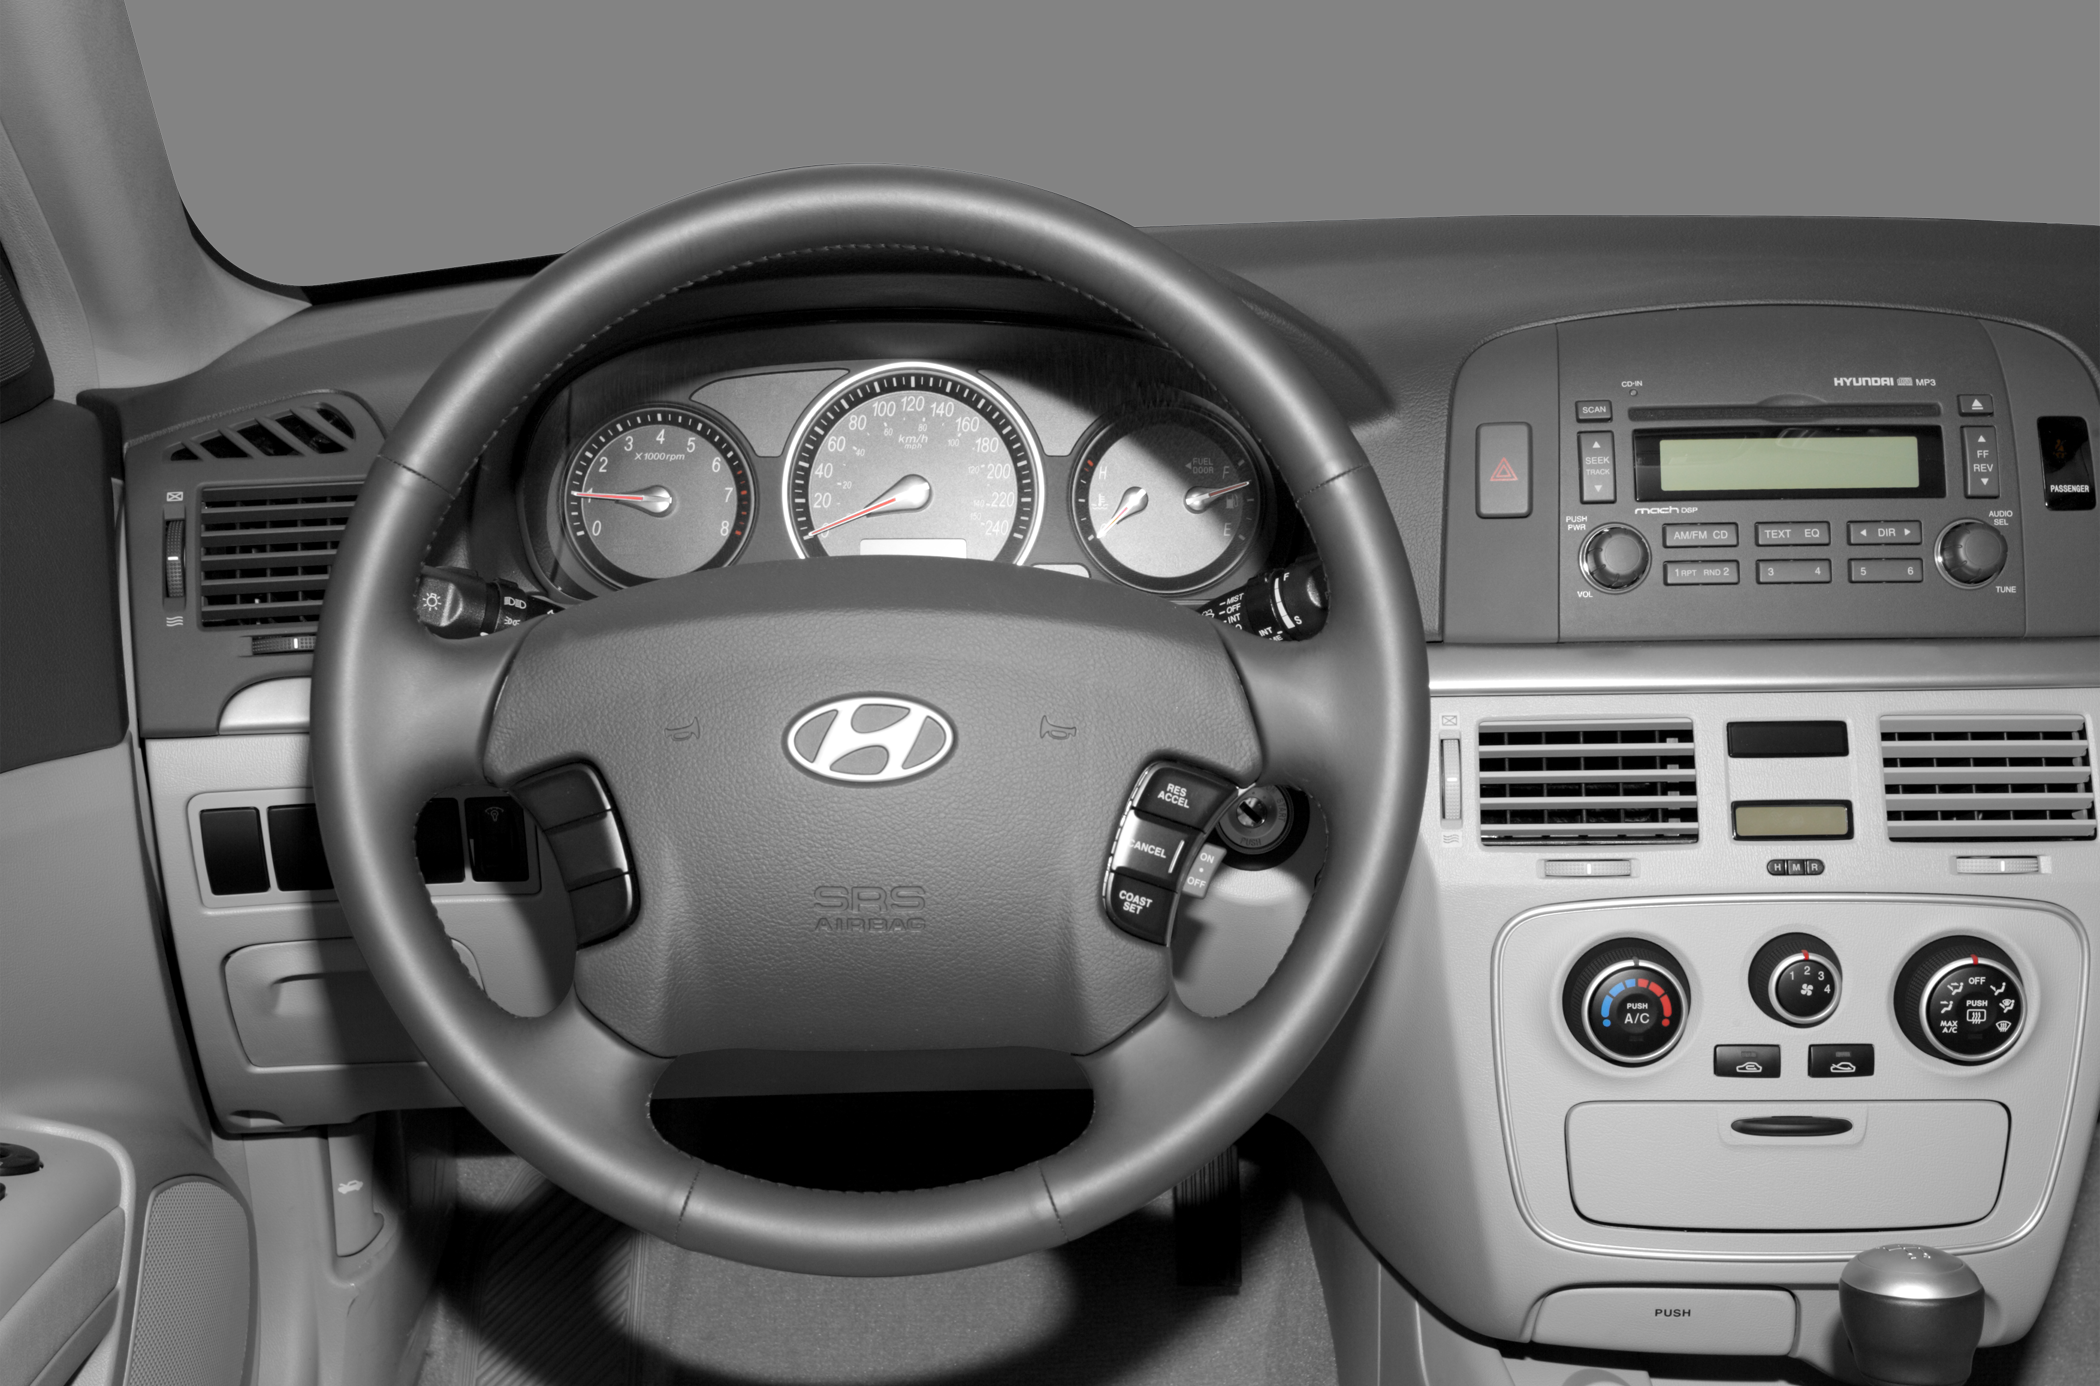 2008 Hyundai Sonata